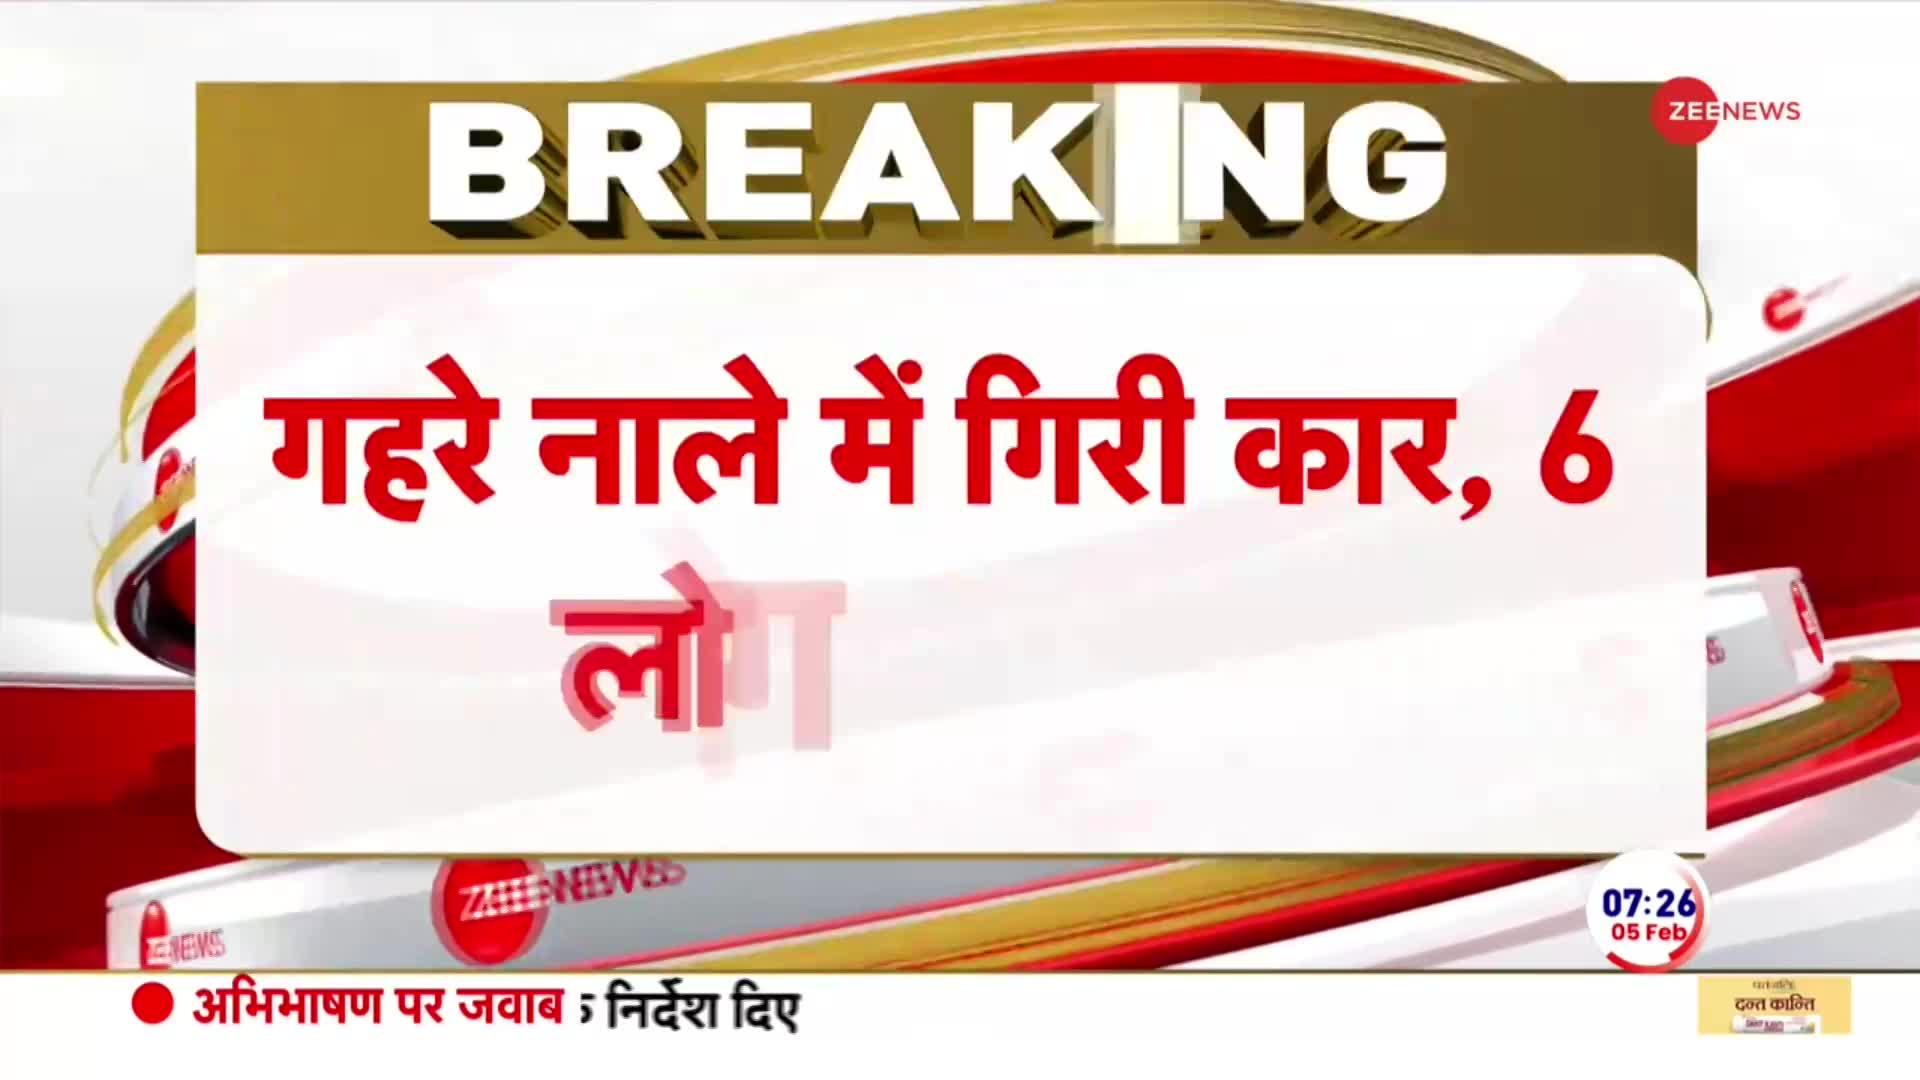 Breaking News: कानपुर सड़क हादसे में 6 लोगों की मौत